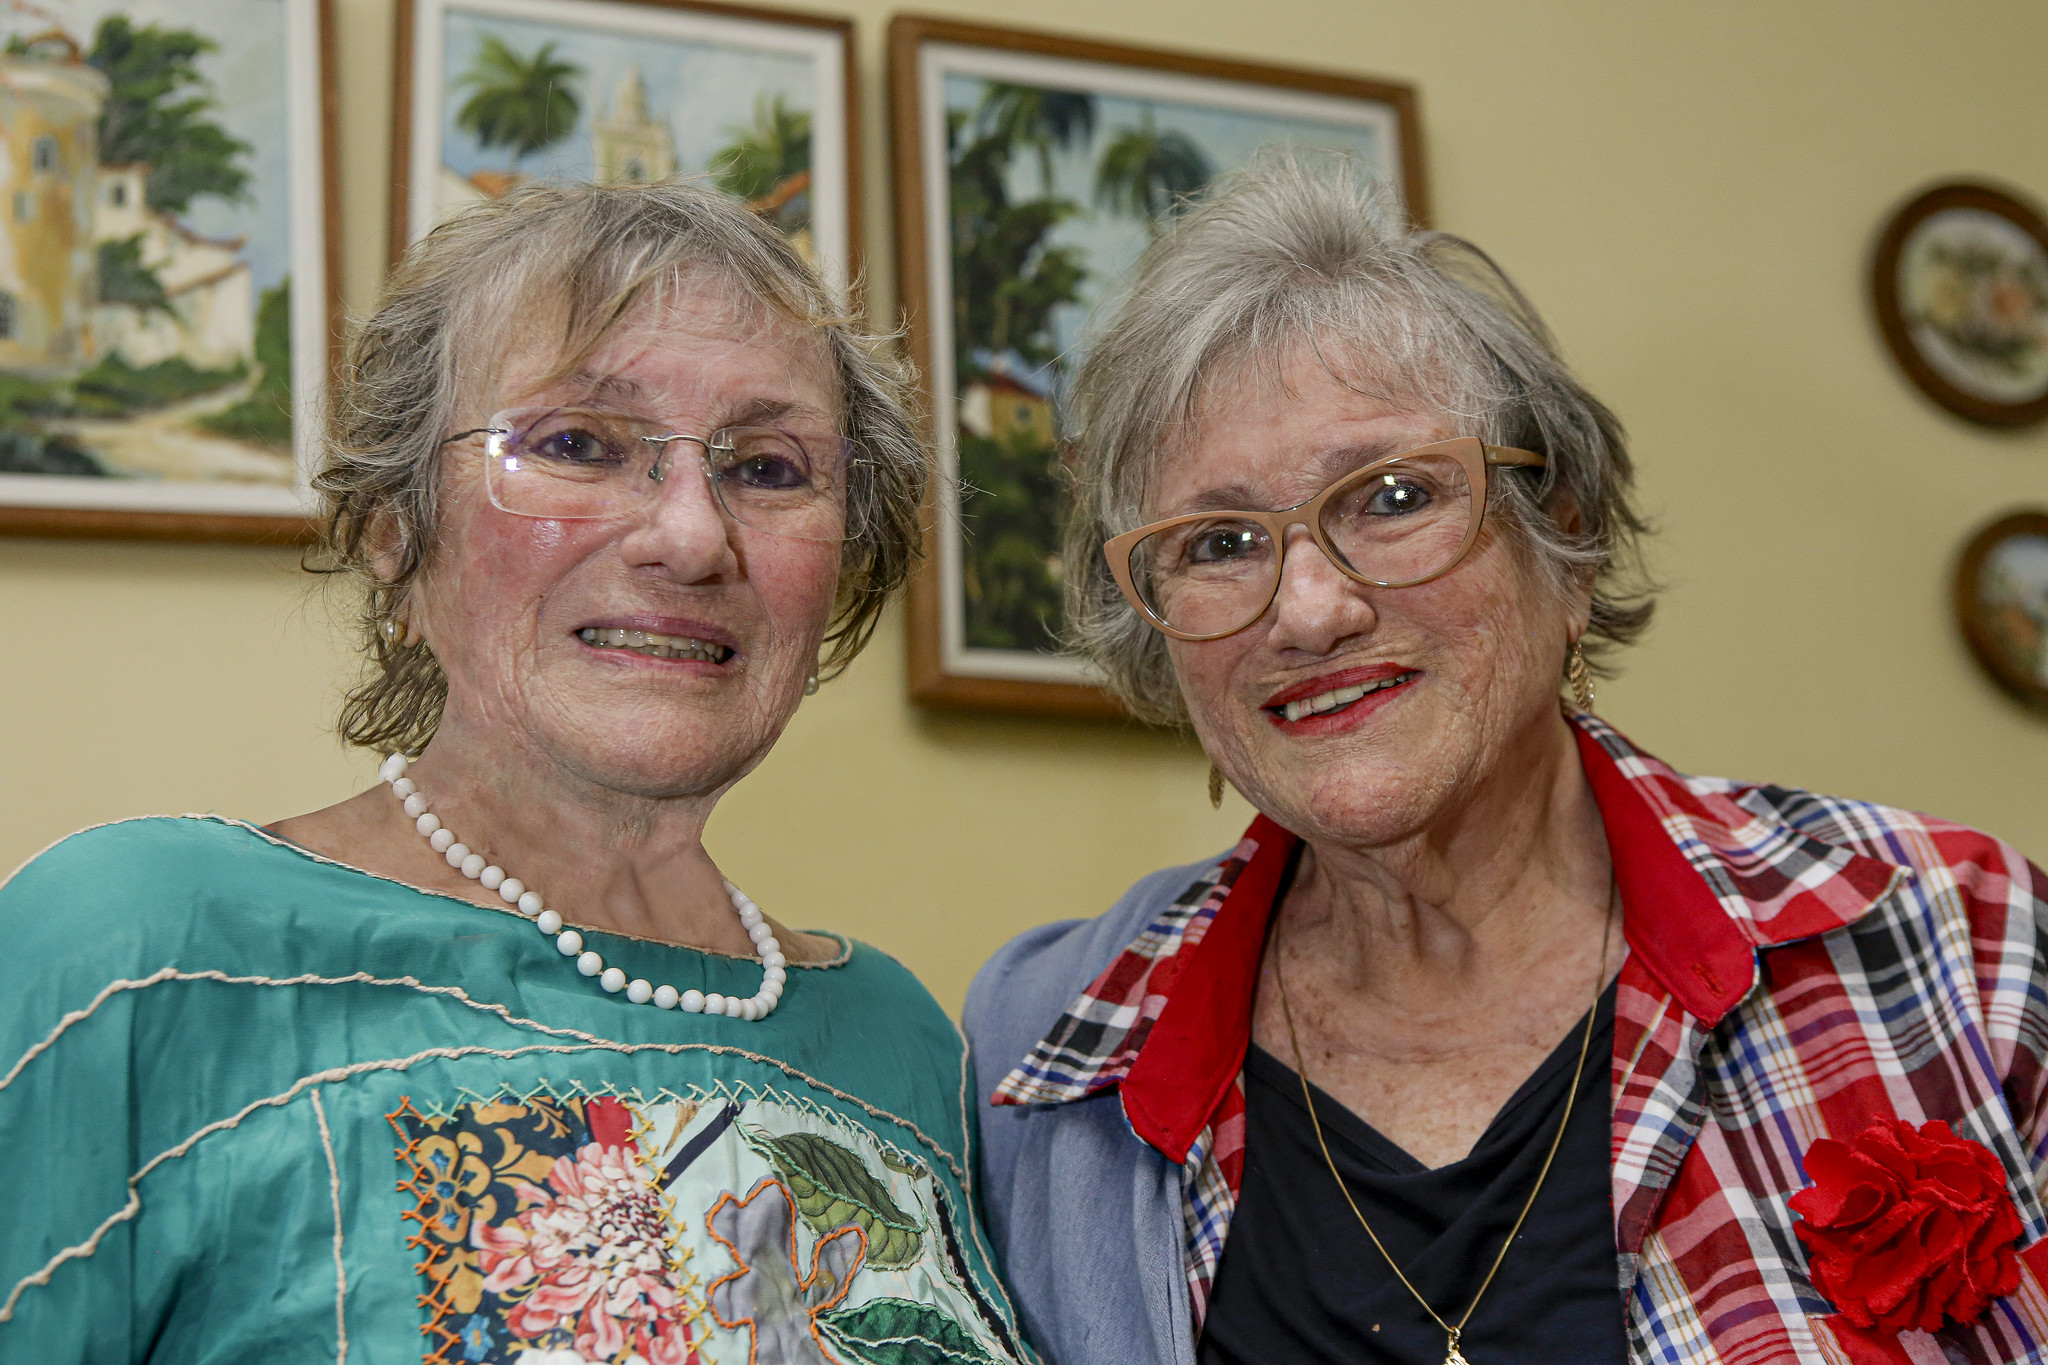 Foto de Teresa e Teresinha Braga de Moraes: elas são duas gêmeas idênticas, mulheres brancas, idosas, de cabelos claros e ralos, usando blusas de estampas coloridas. Elas foram fotografadas em uma sala fechada, de parede amarela, com quadros ao fundo.